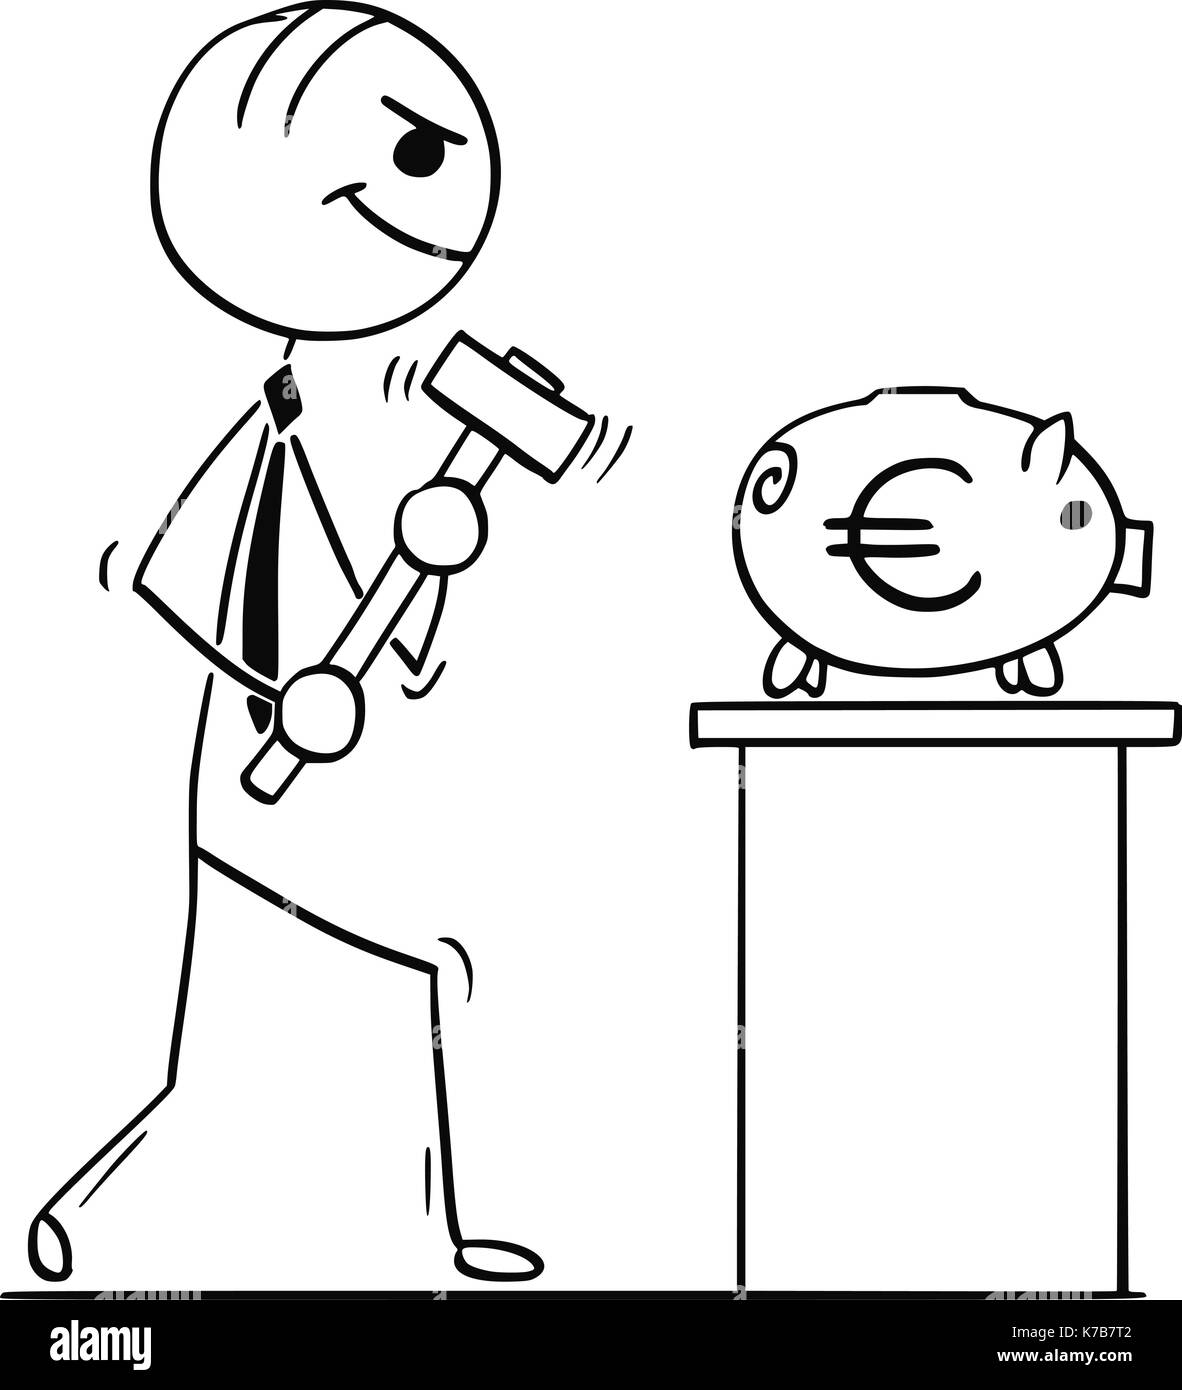 Cartoon stick Mann Abbildung: Lächeln, Geschäftsmann oder Politiker gehen mit Hammer das Sparschwein mit Euro Zeichen zu brechen. Stock Vektor